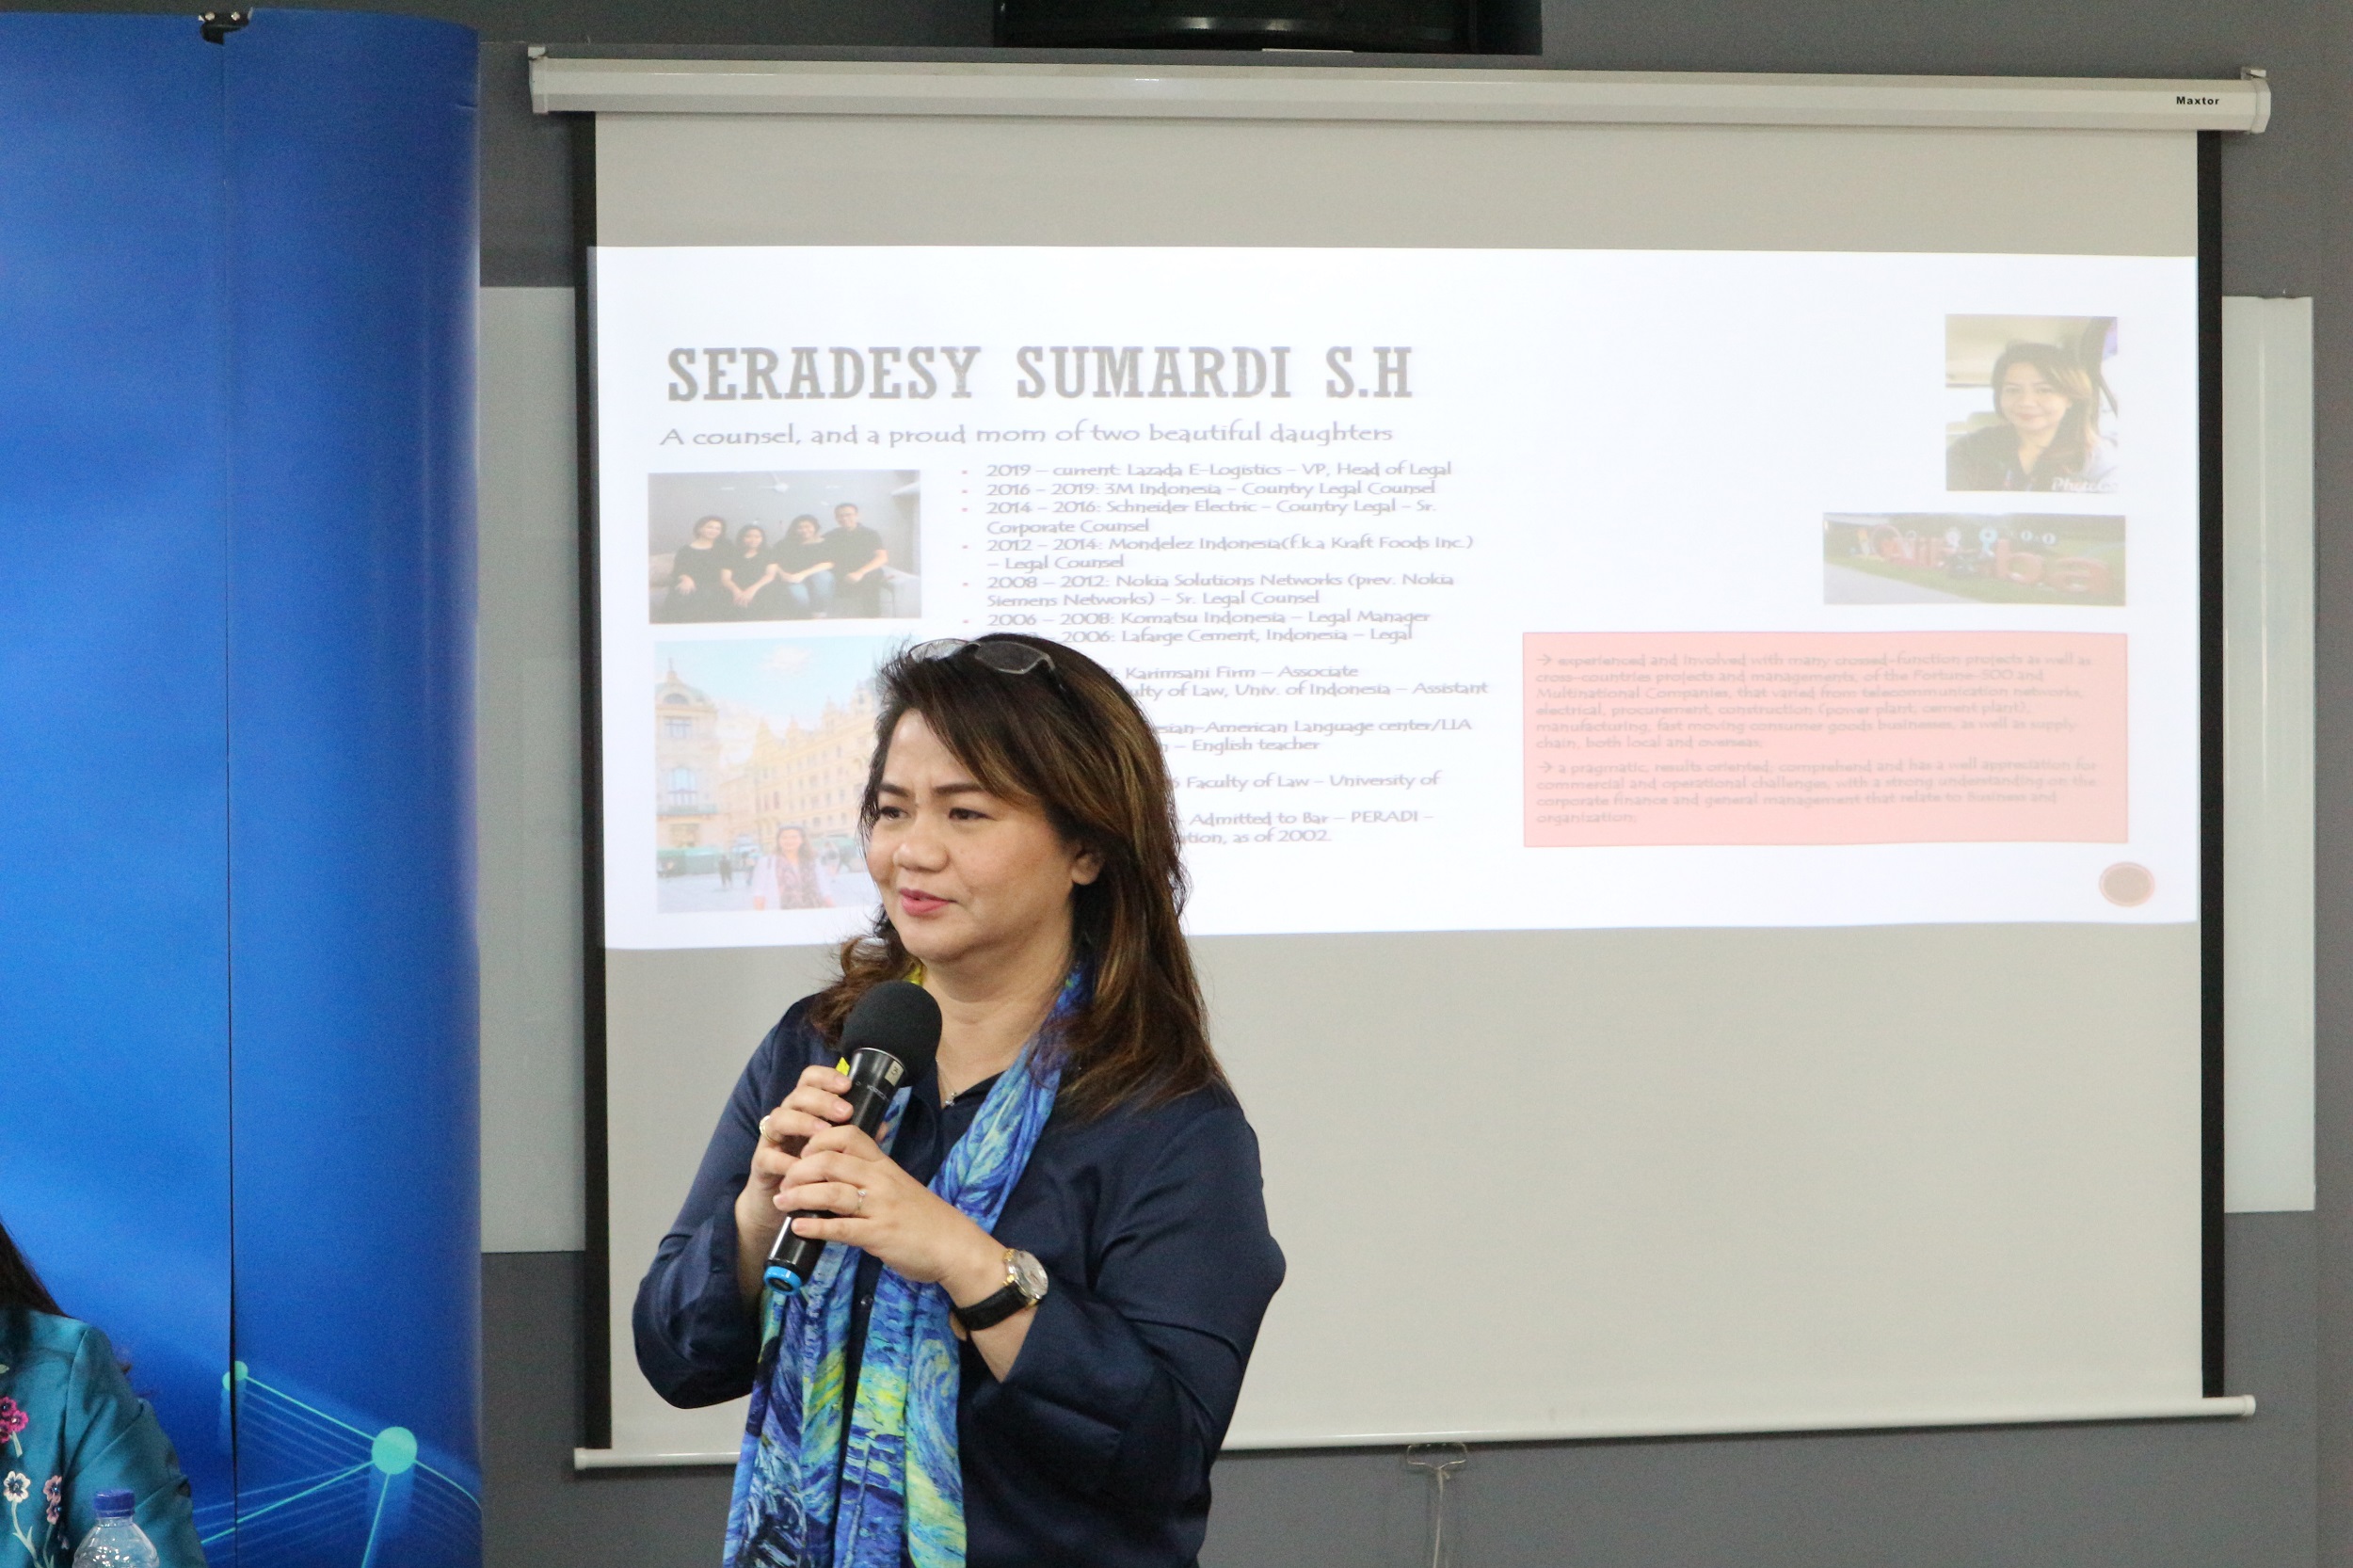 Seradesy Sumardi - VP, Head of Legal, Lazada E-Logistics Indonesia (ICCA)